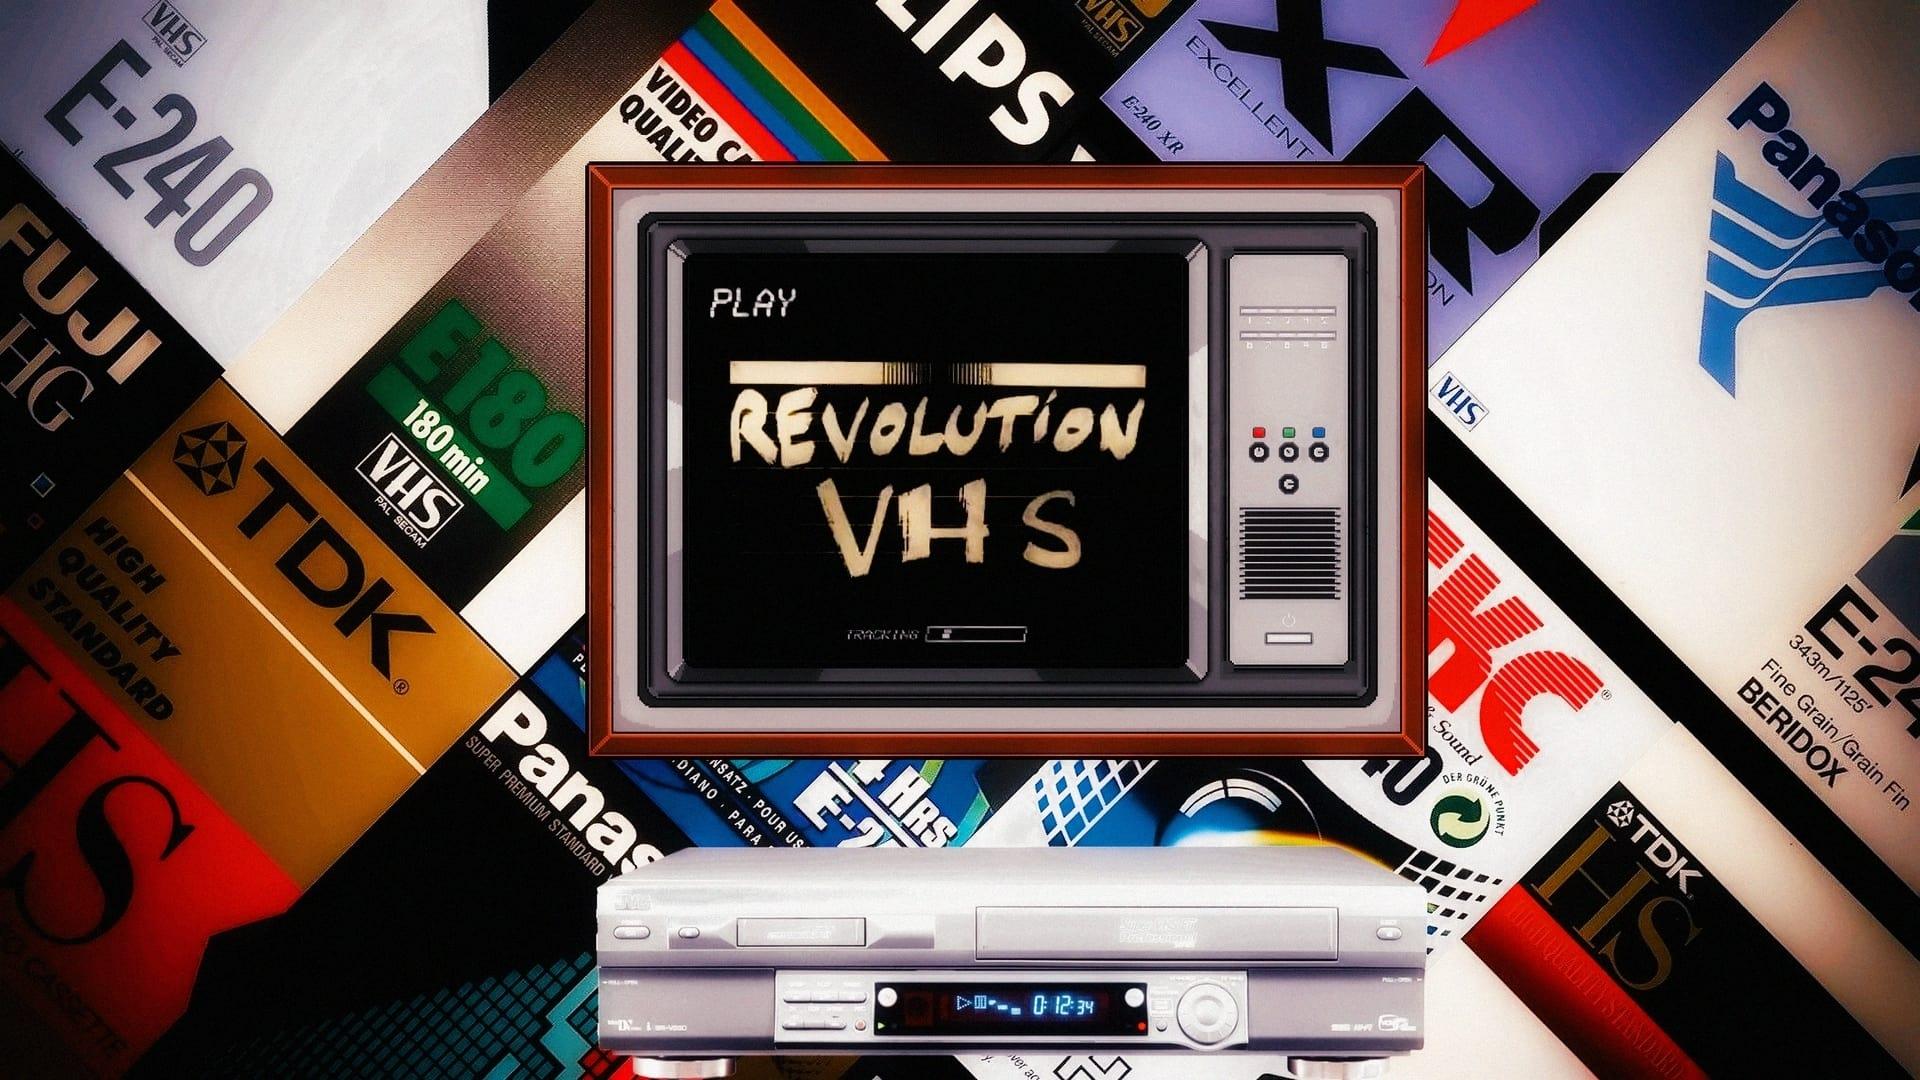 VHS Revolution backdrop